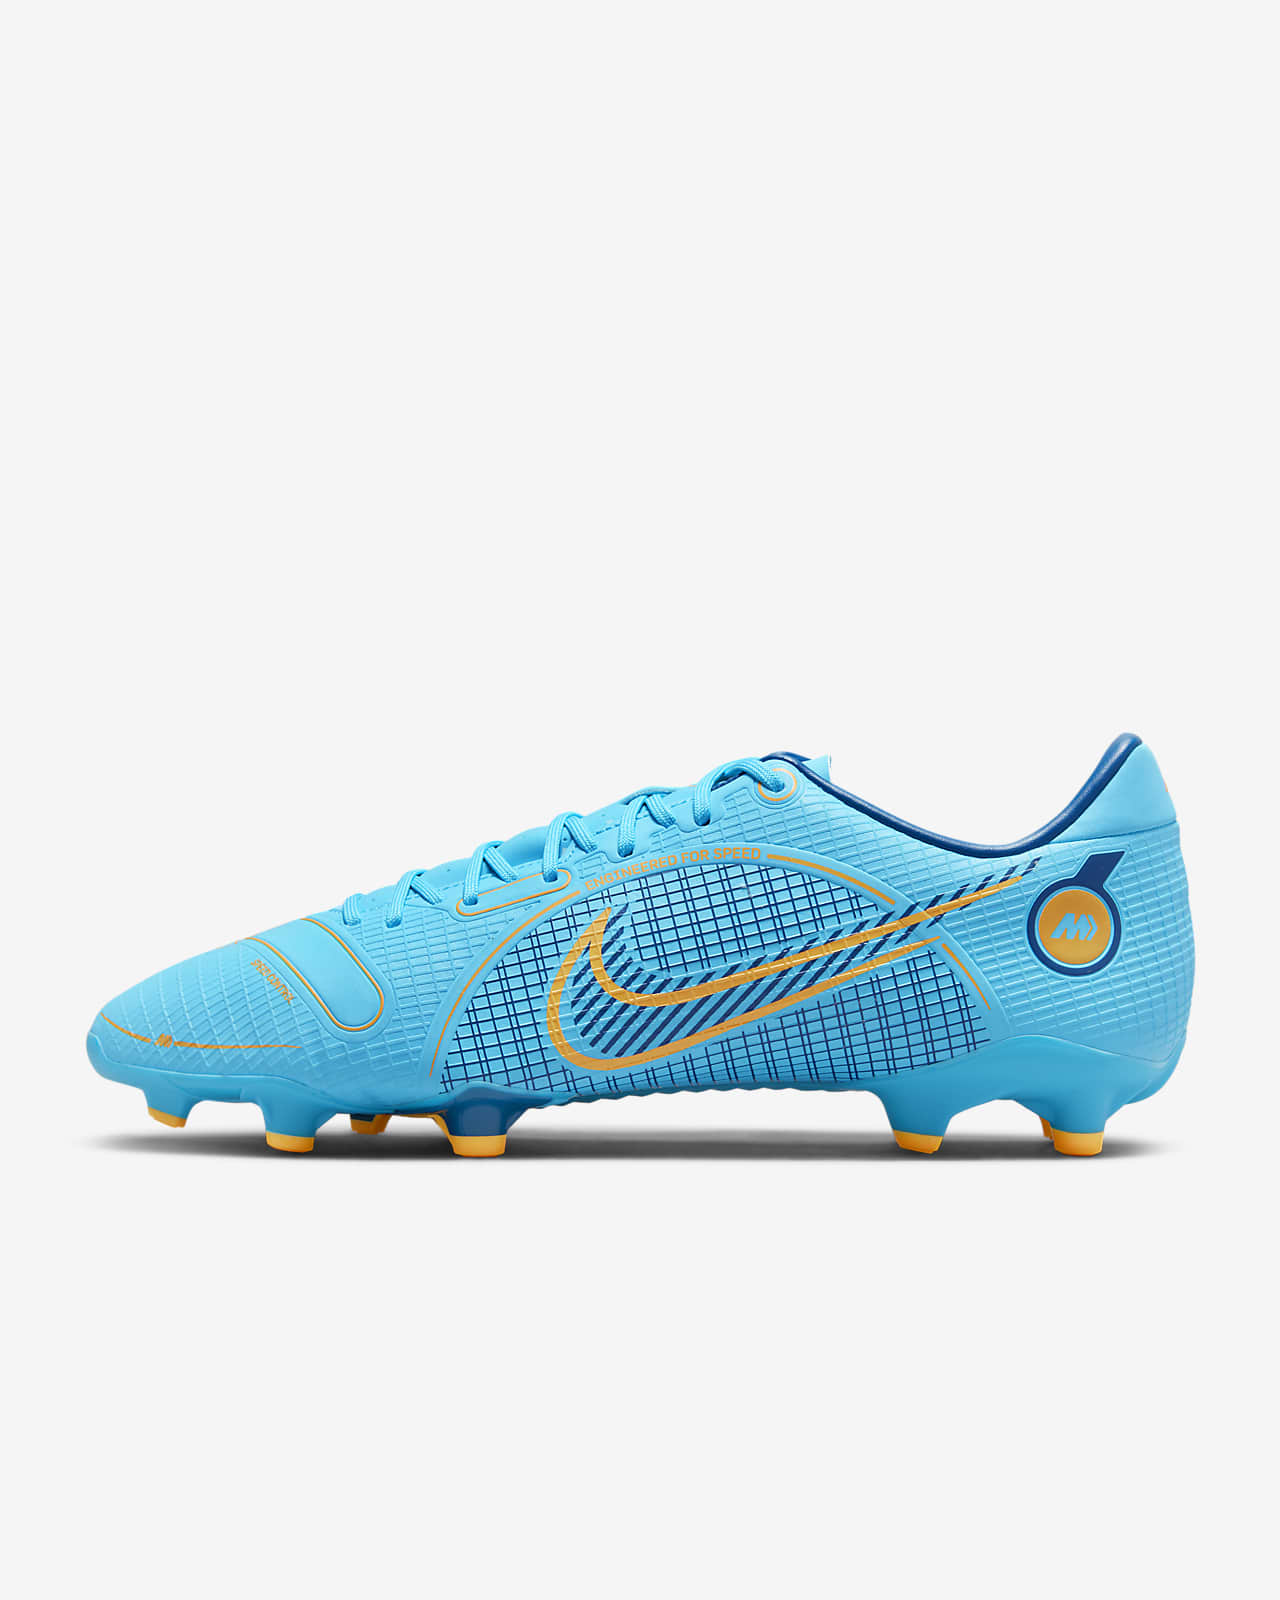 Ποδοσφαιρικά παπούτσια για διαφορετικές επιφάνειες Nike Mercurial Vapor 14 Academy MG